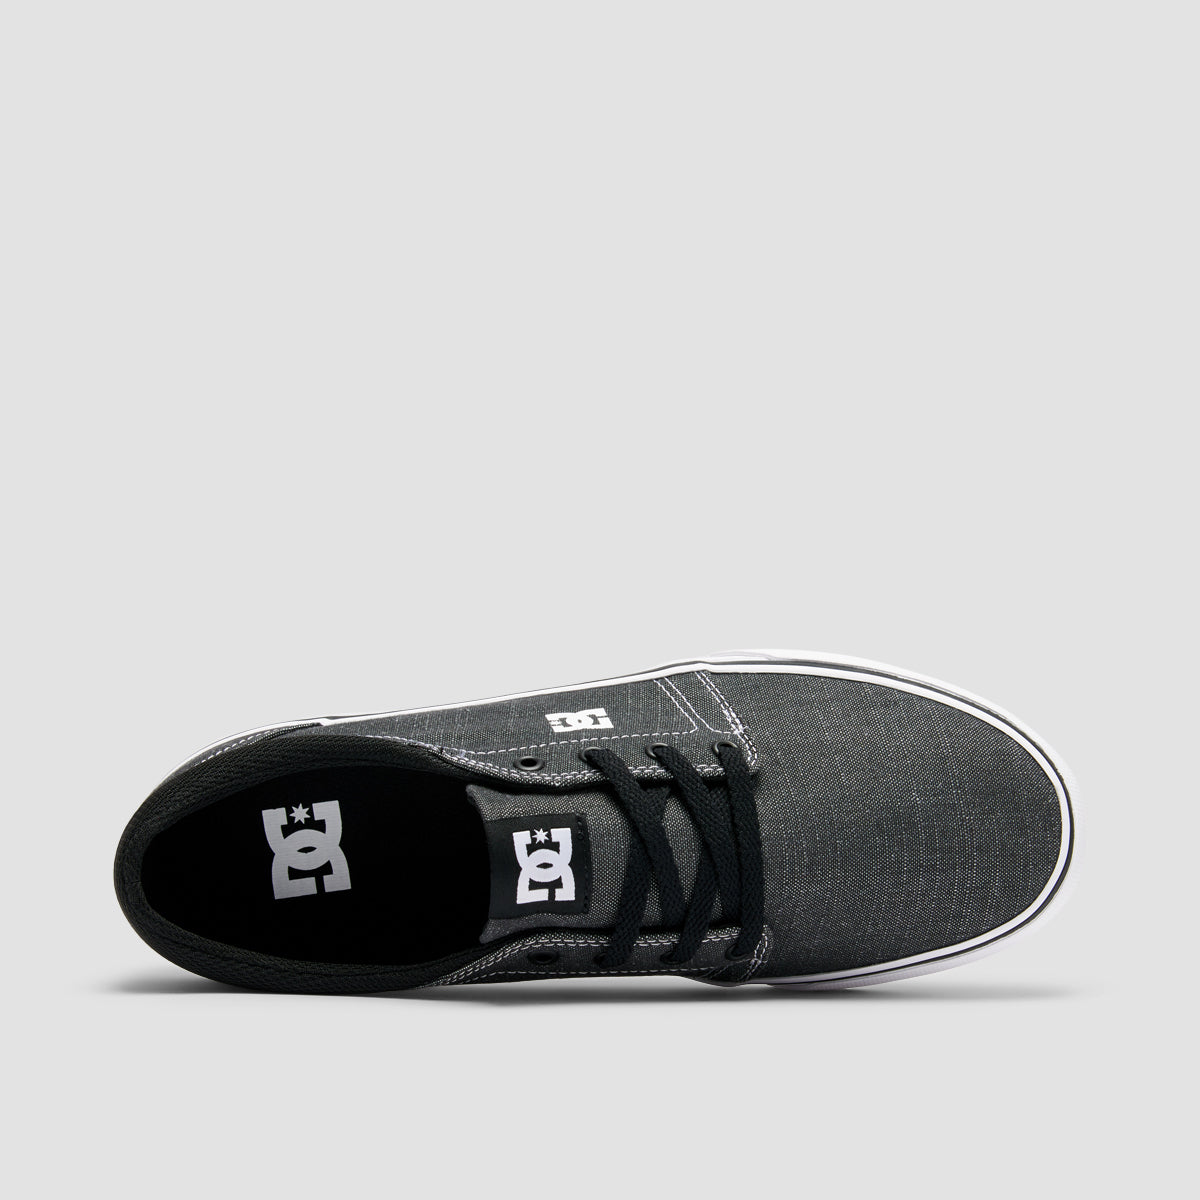 DC Trase TX SE Shoes - Black/White/White